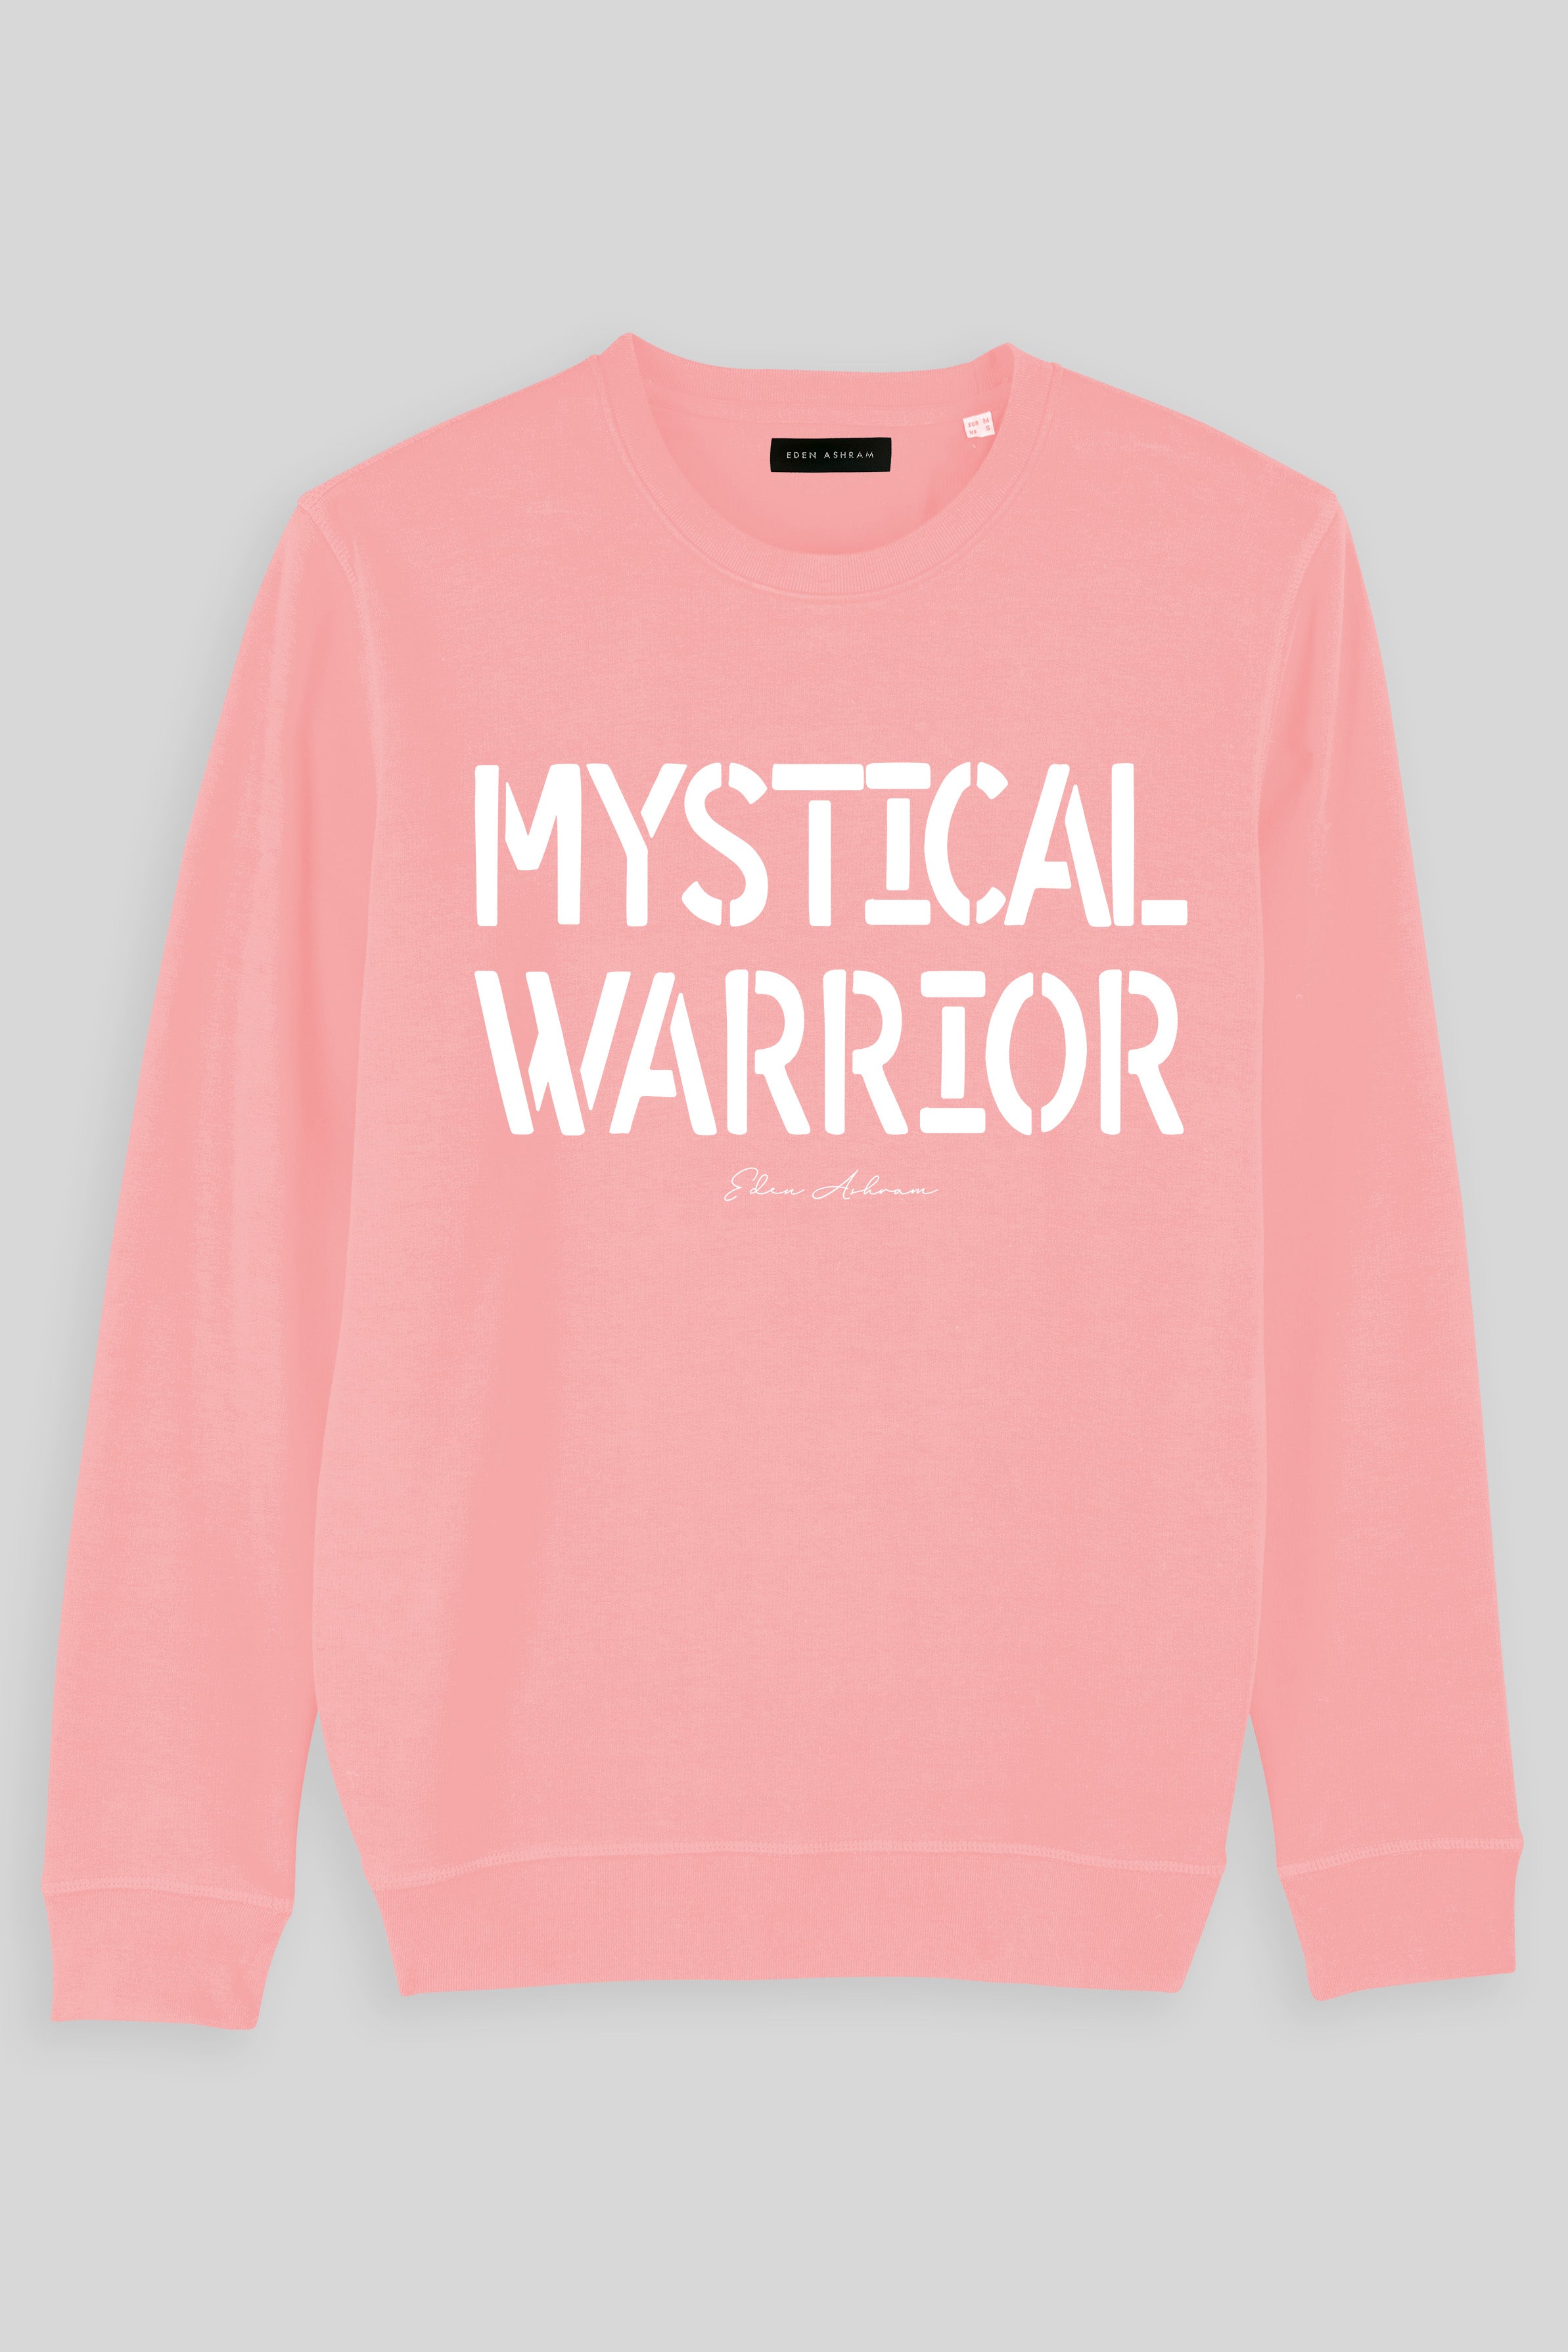 Eden Ashram Mystical Warrior Premium Crew Neck Sweatshirt Coral Pink